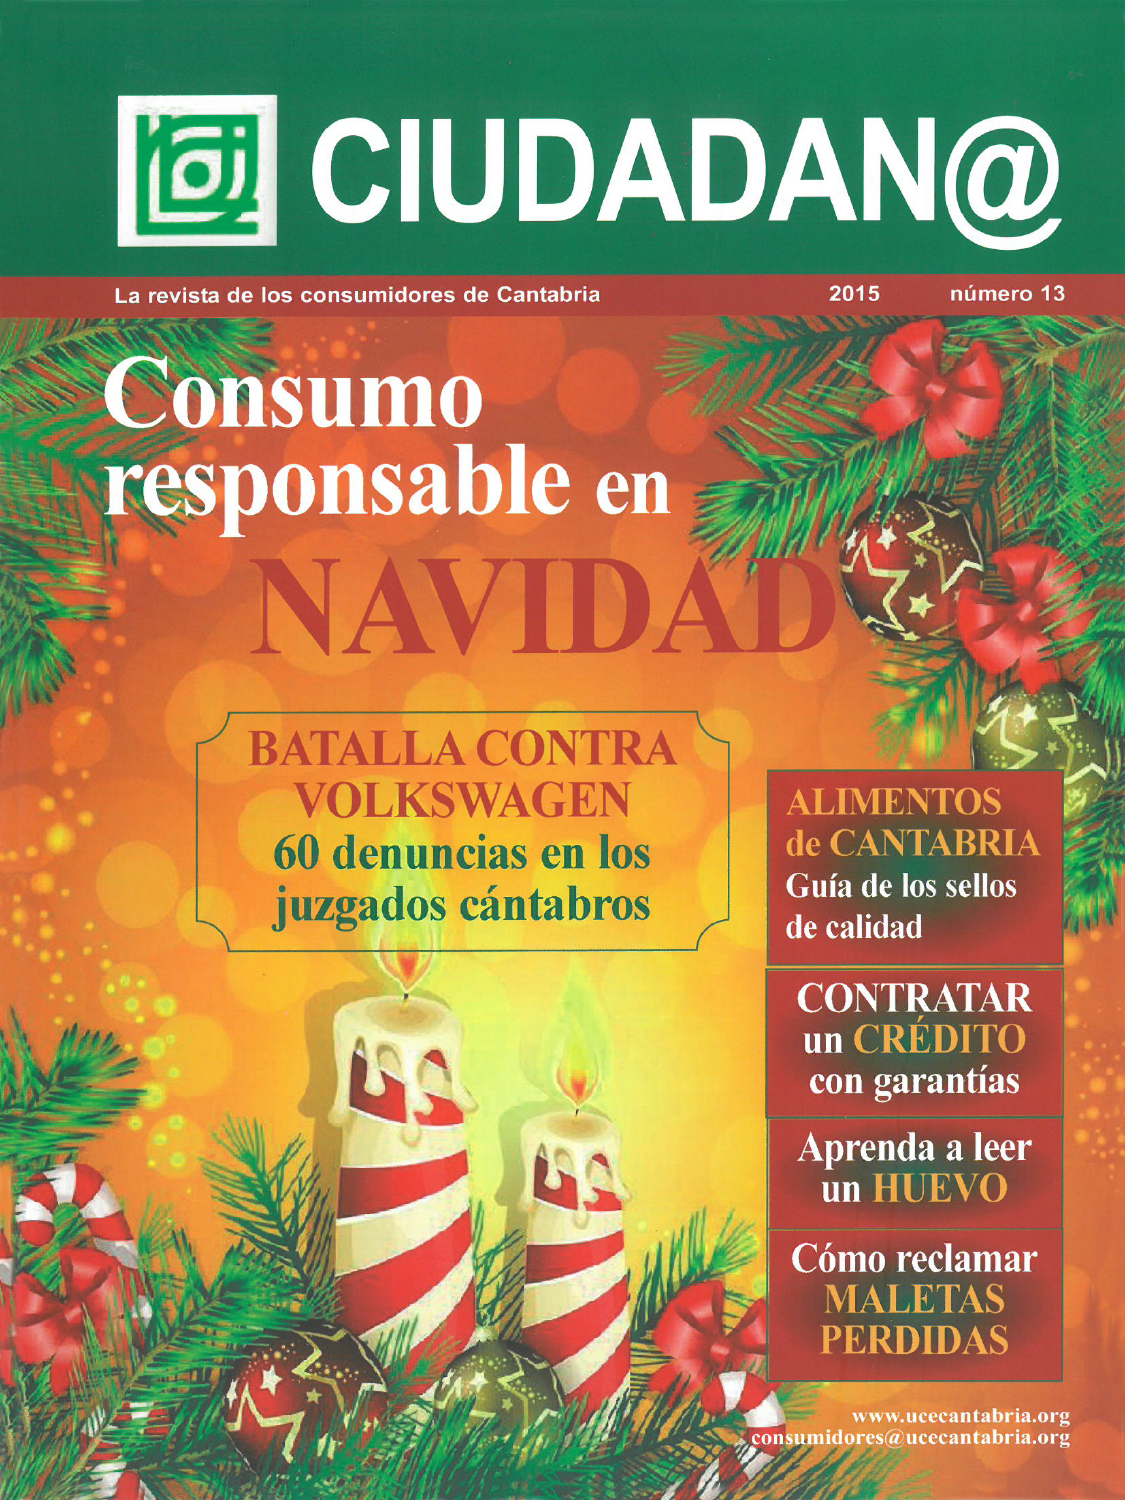 Revista Ciudadan@ Nº13